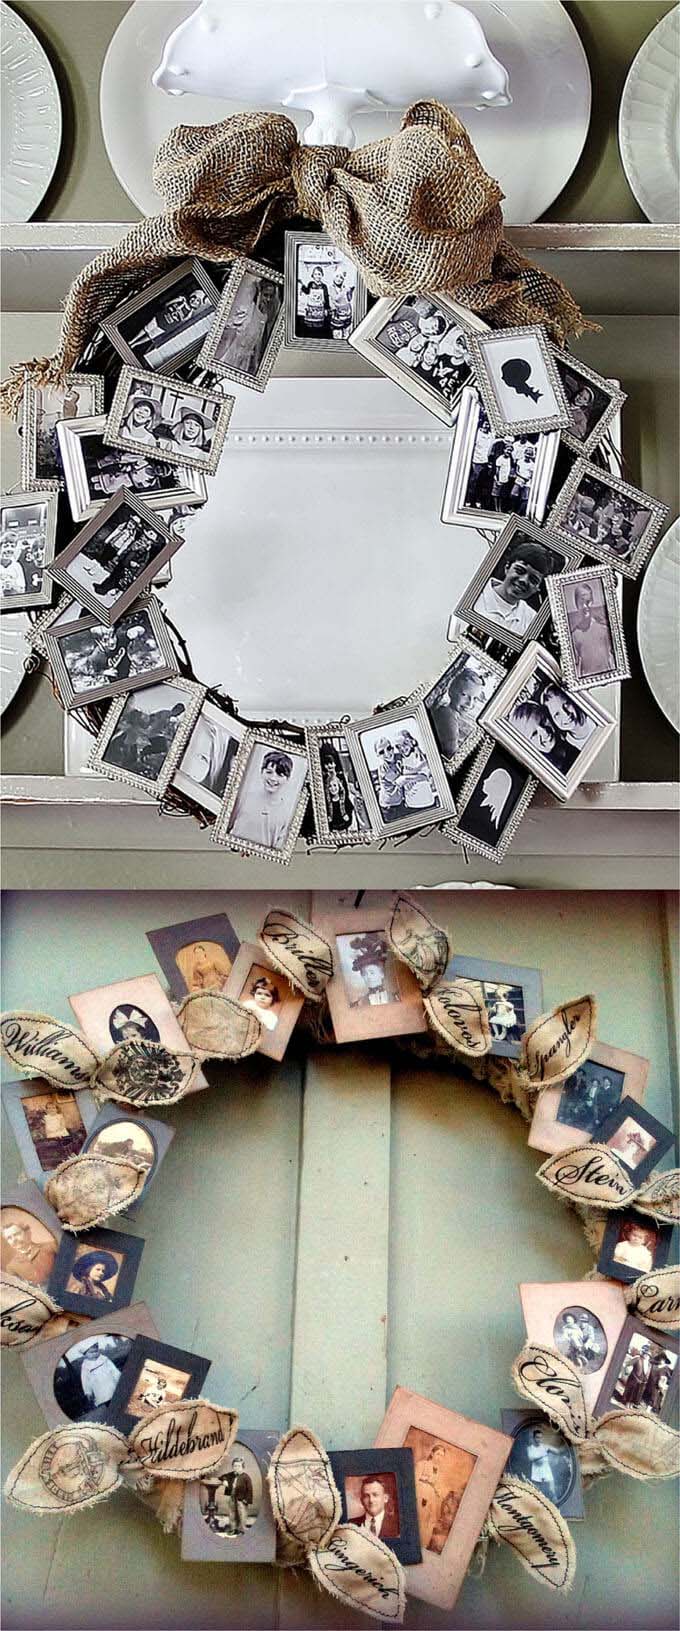 Hang a Wreath of Smiles #family #homedecor #decorhomeideas